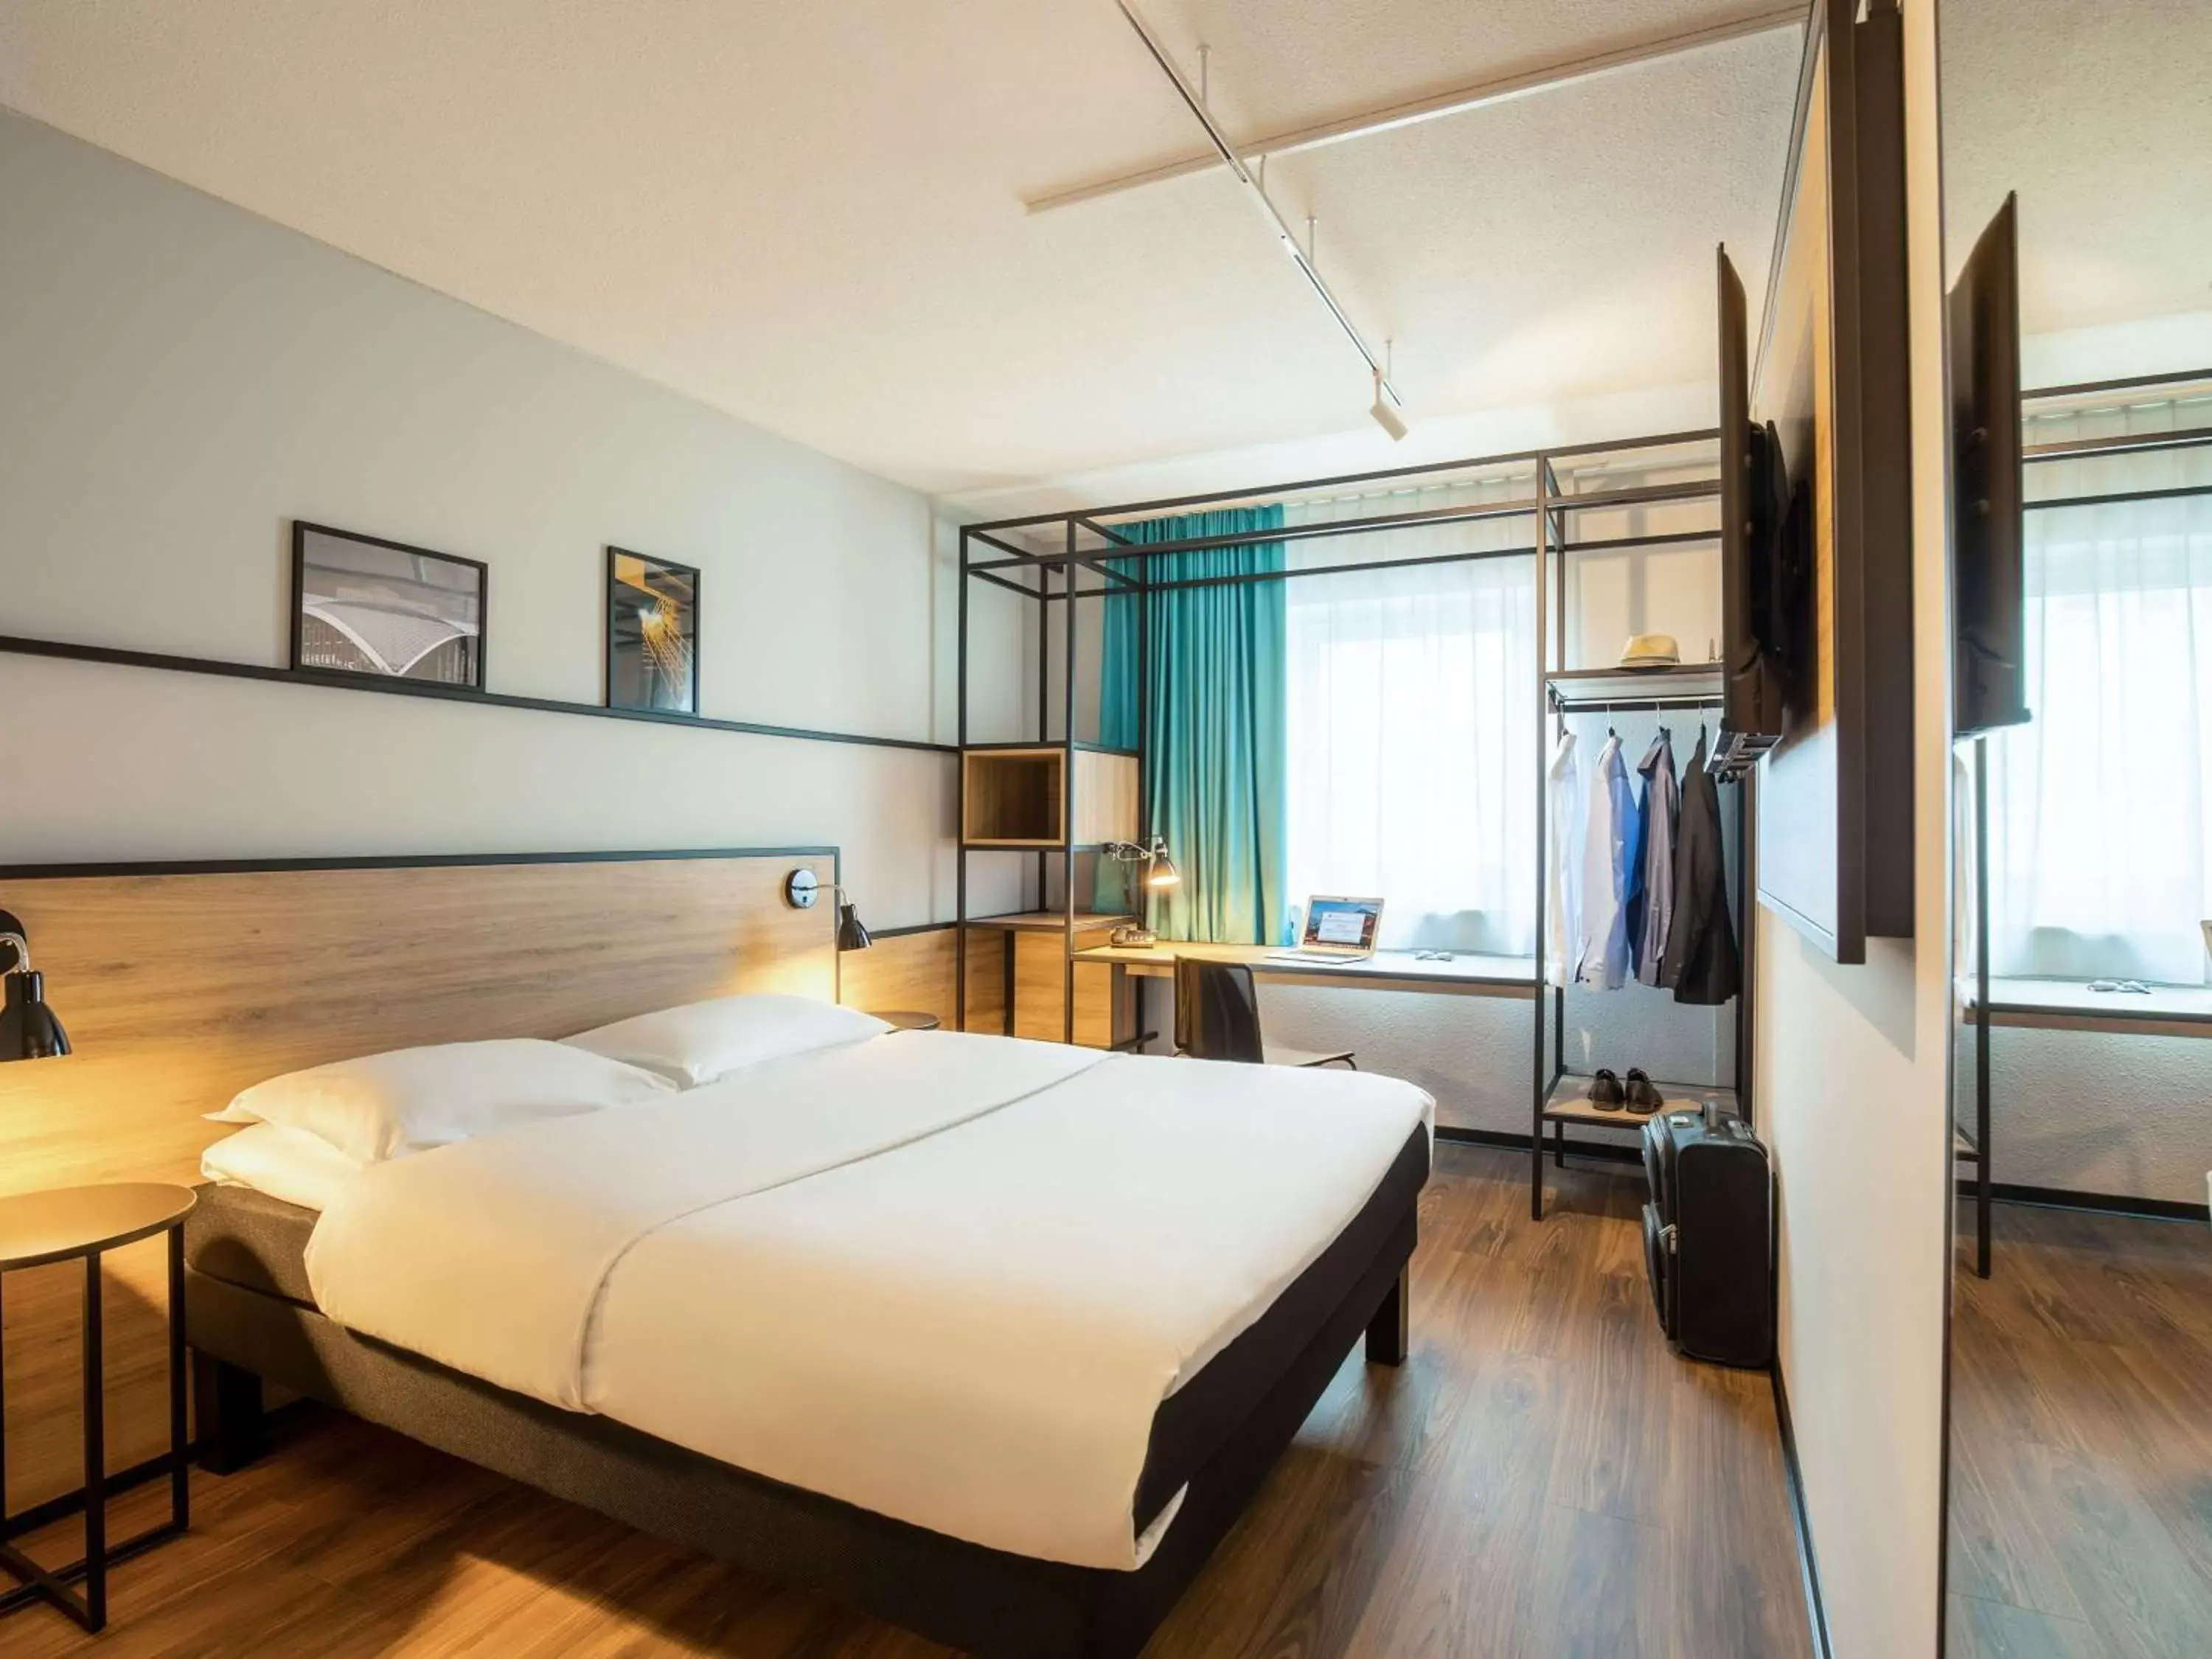 Bedroom in ibis Hotel Dortmund City